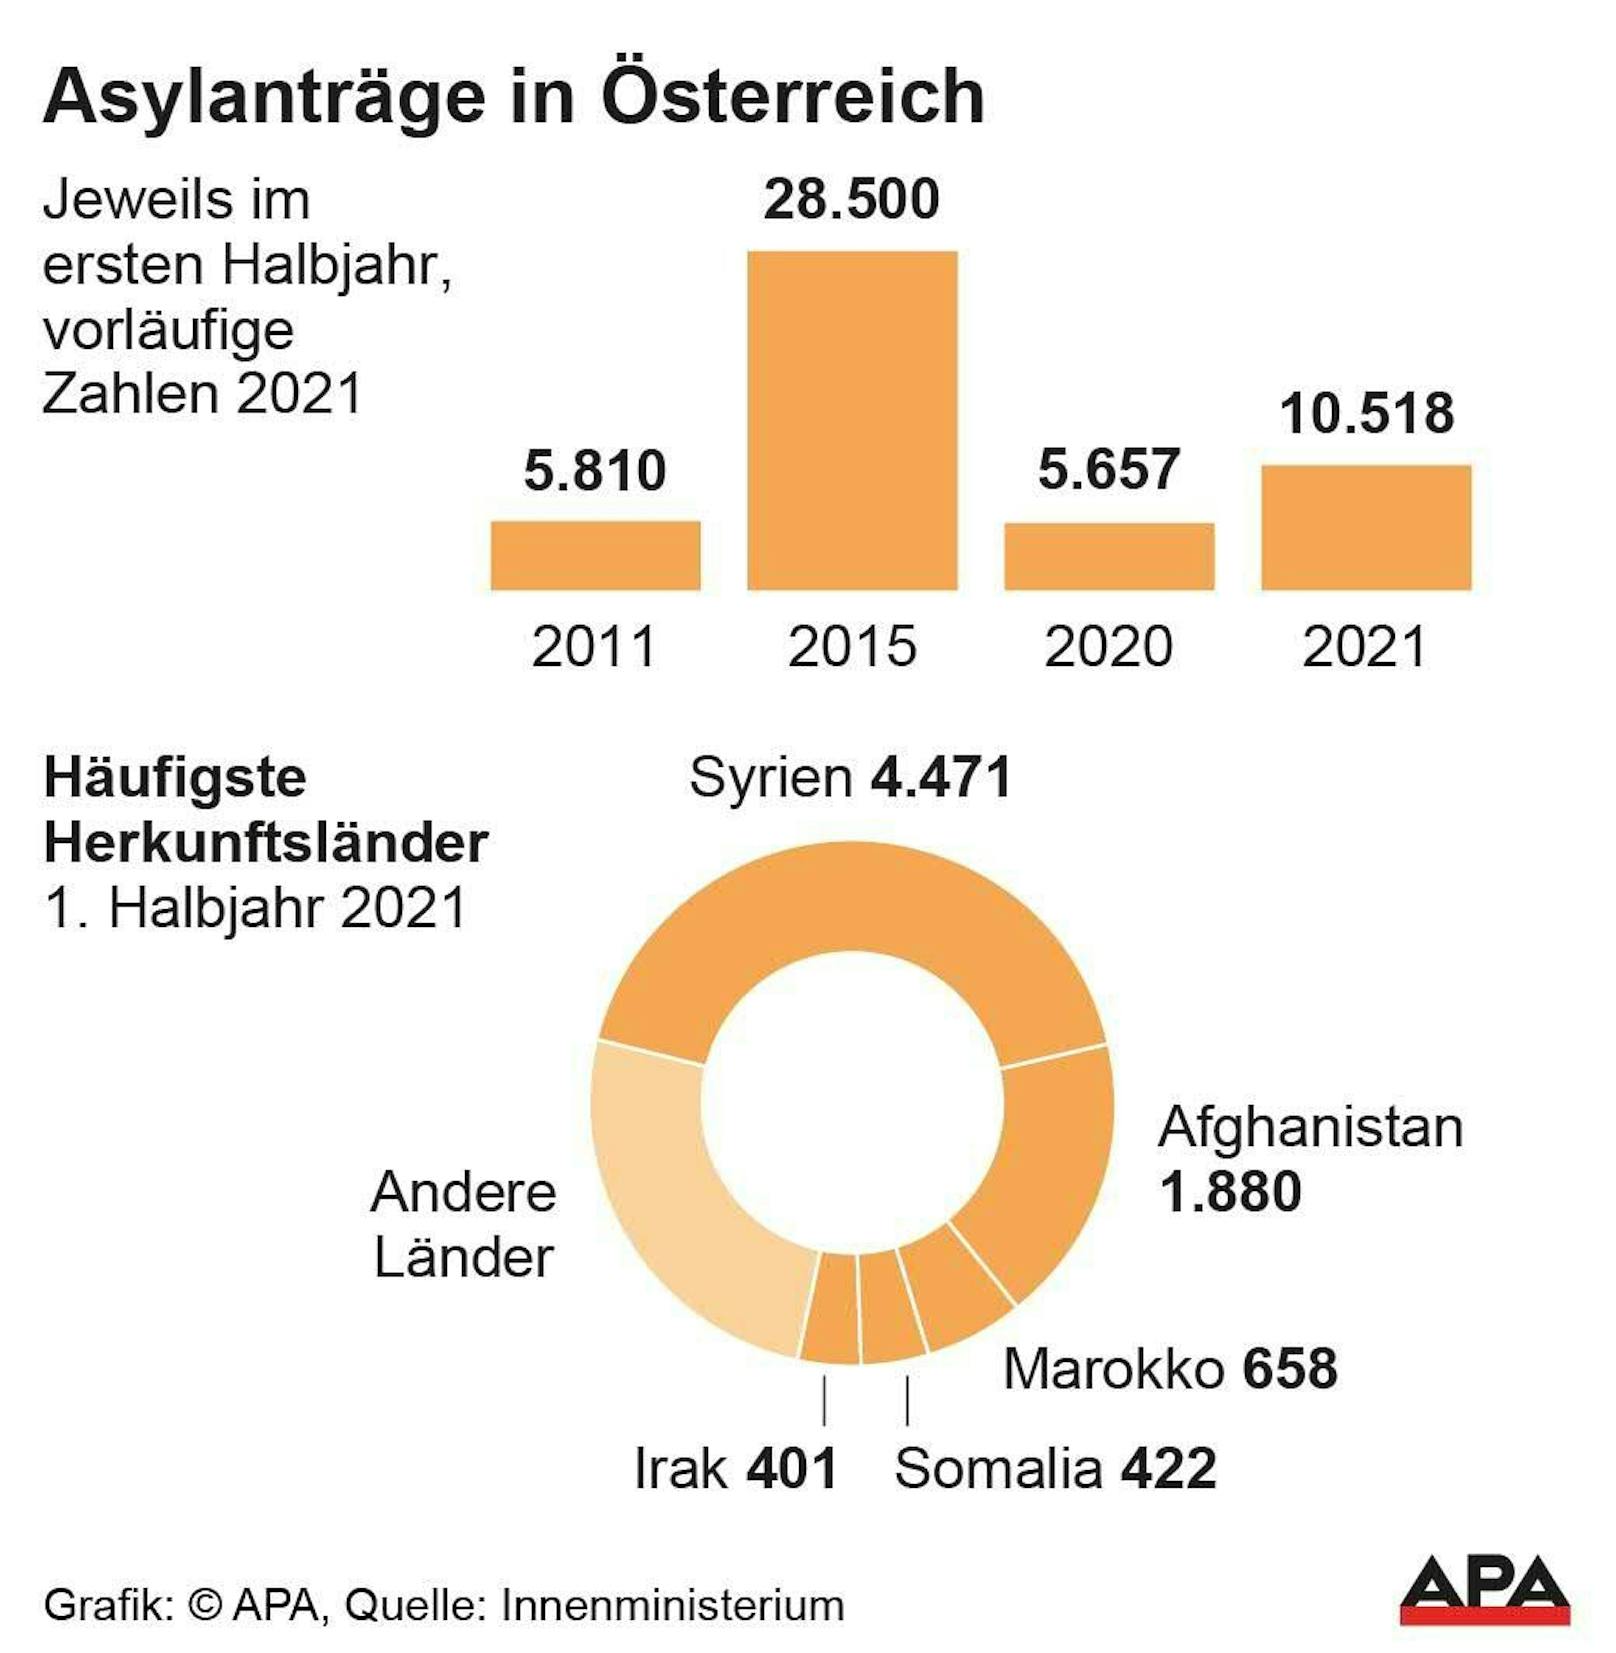 Grafik zeigt, aus welchen Ländern die meisten Asylwerber kommen